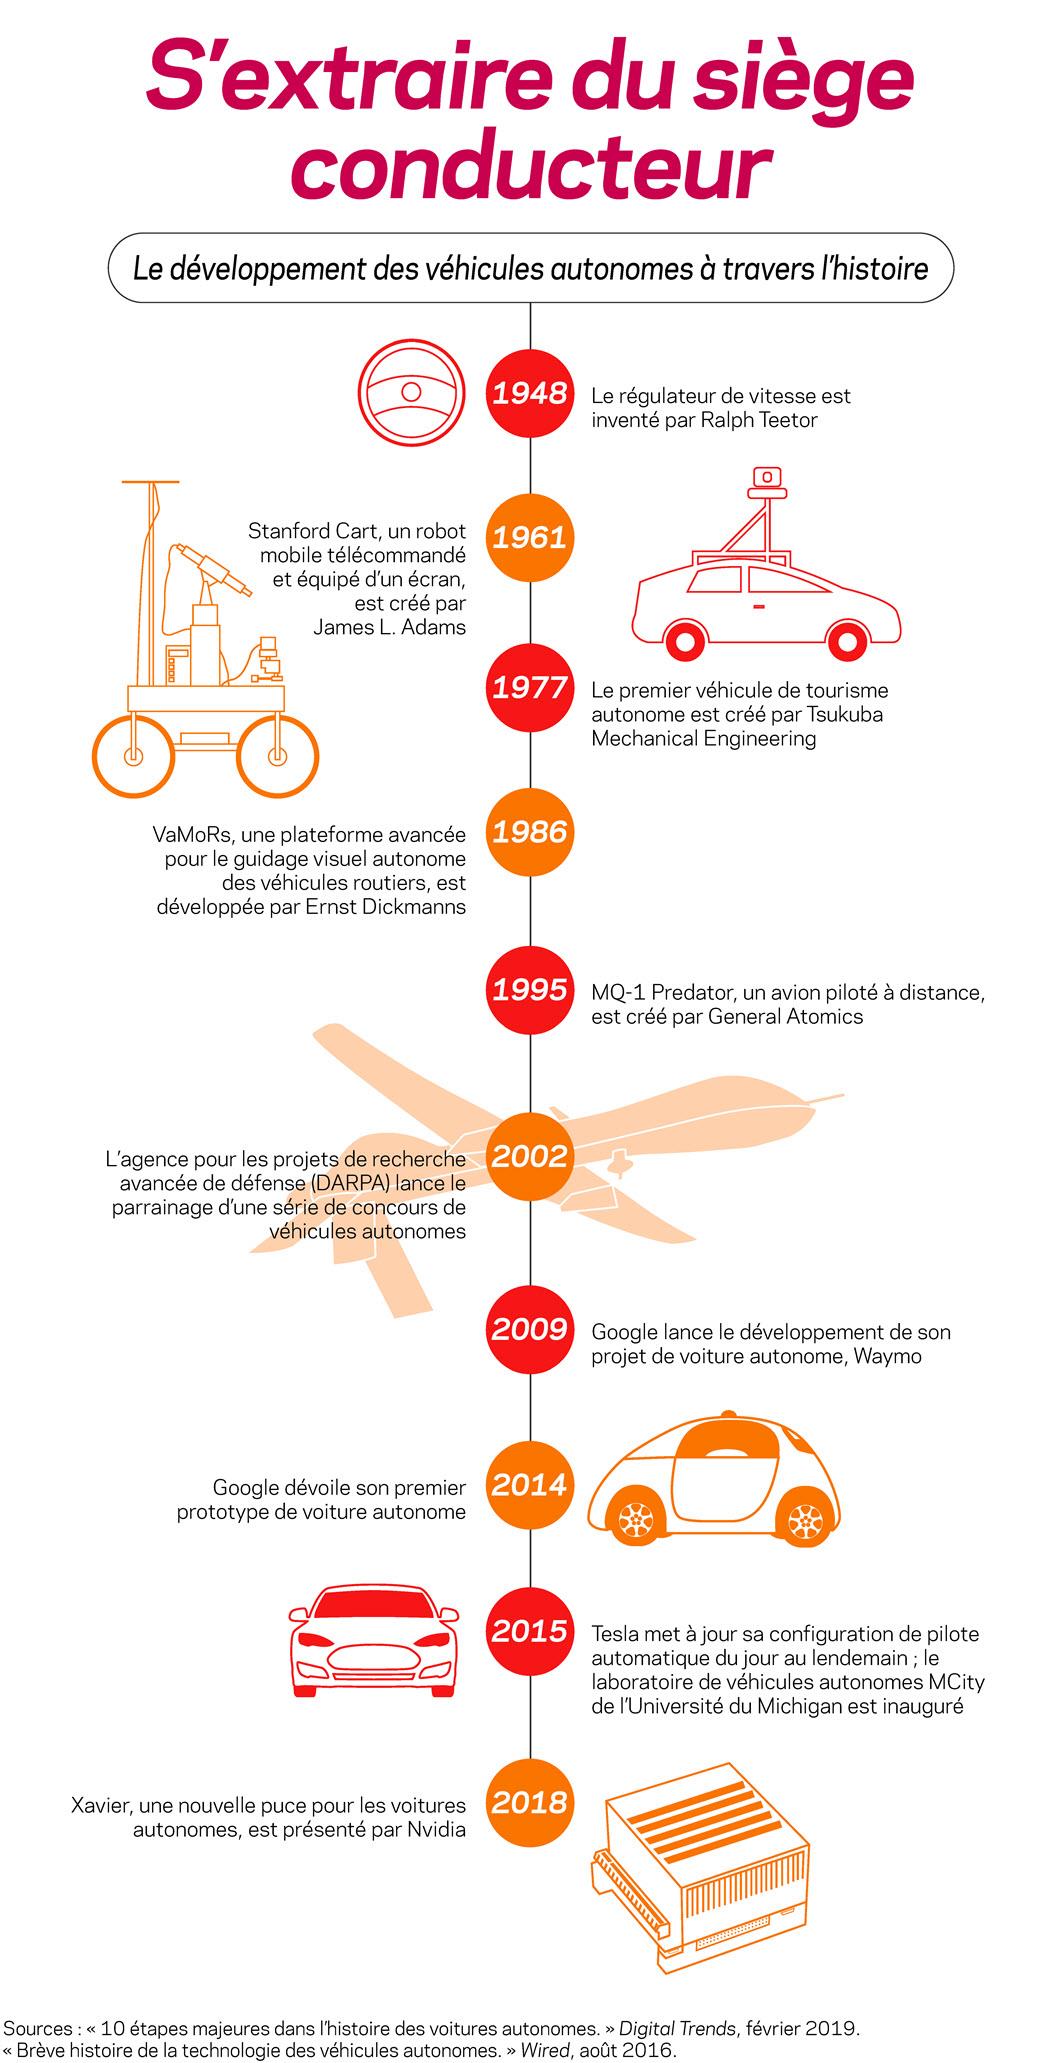  Une infographie explique le développement de véhicules autonomes à travers l'histoire.